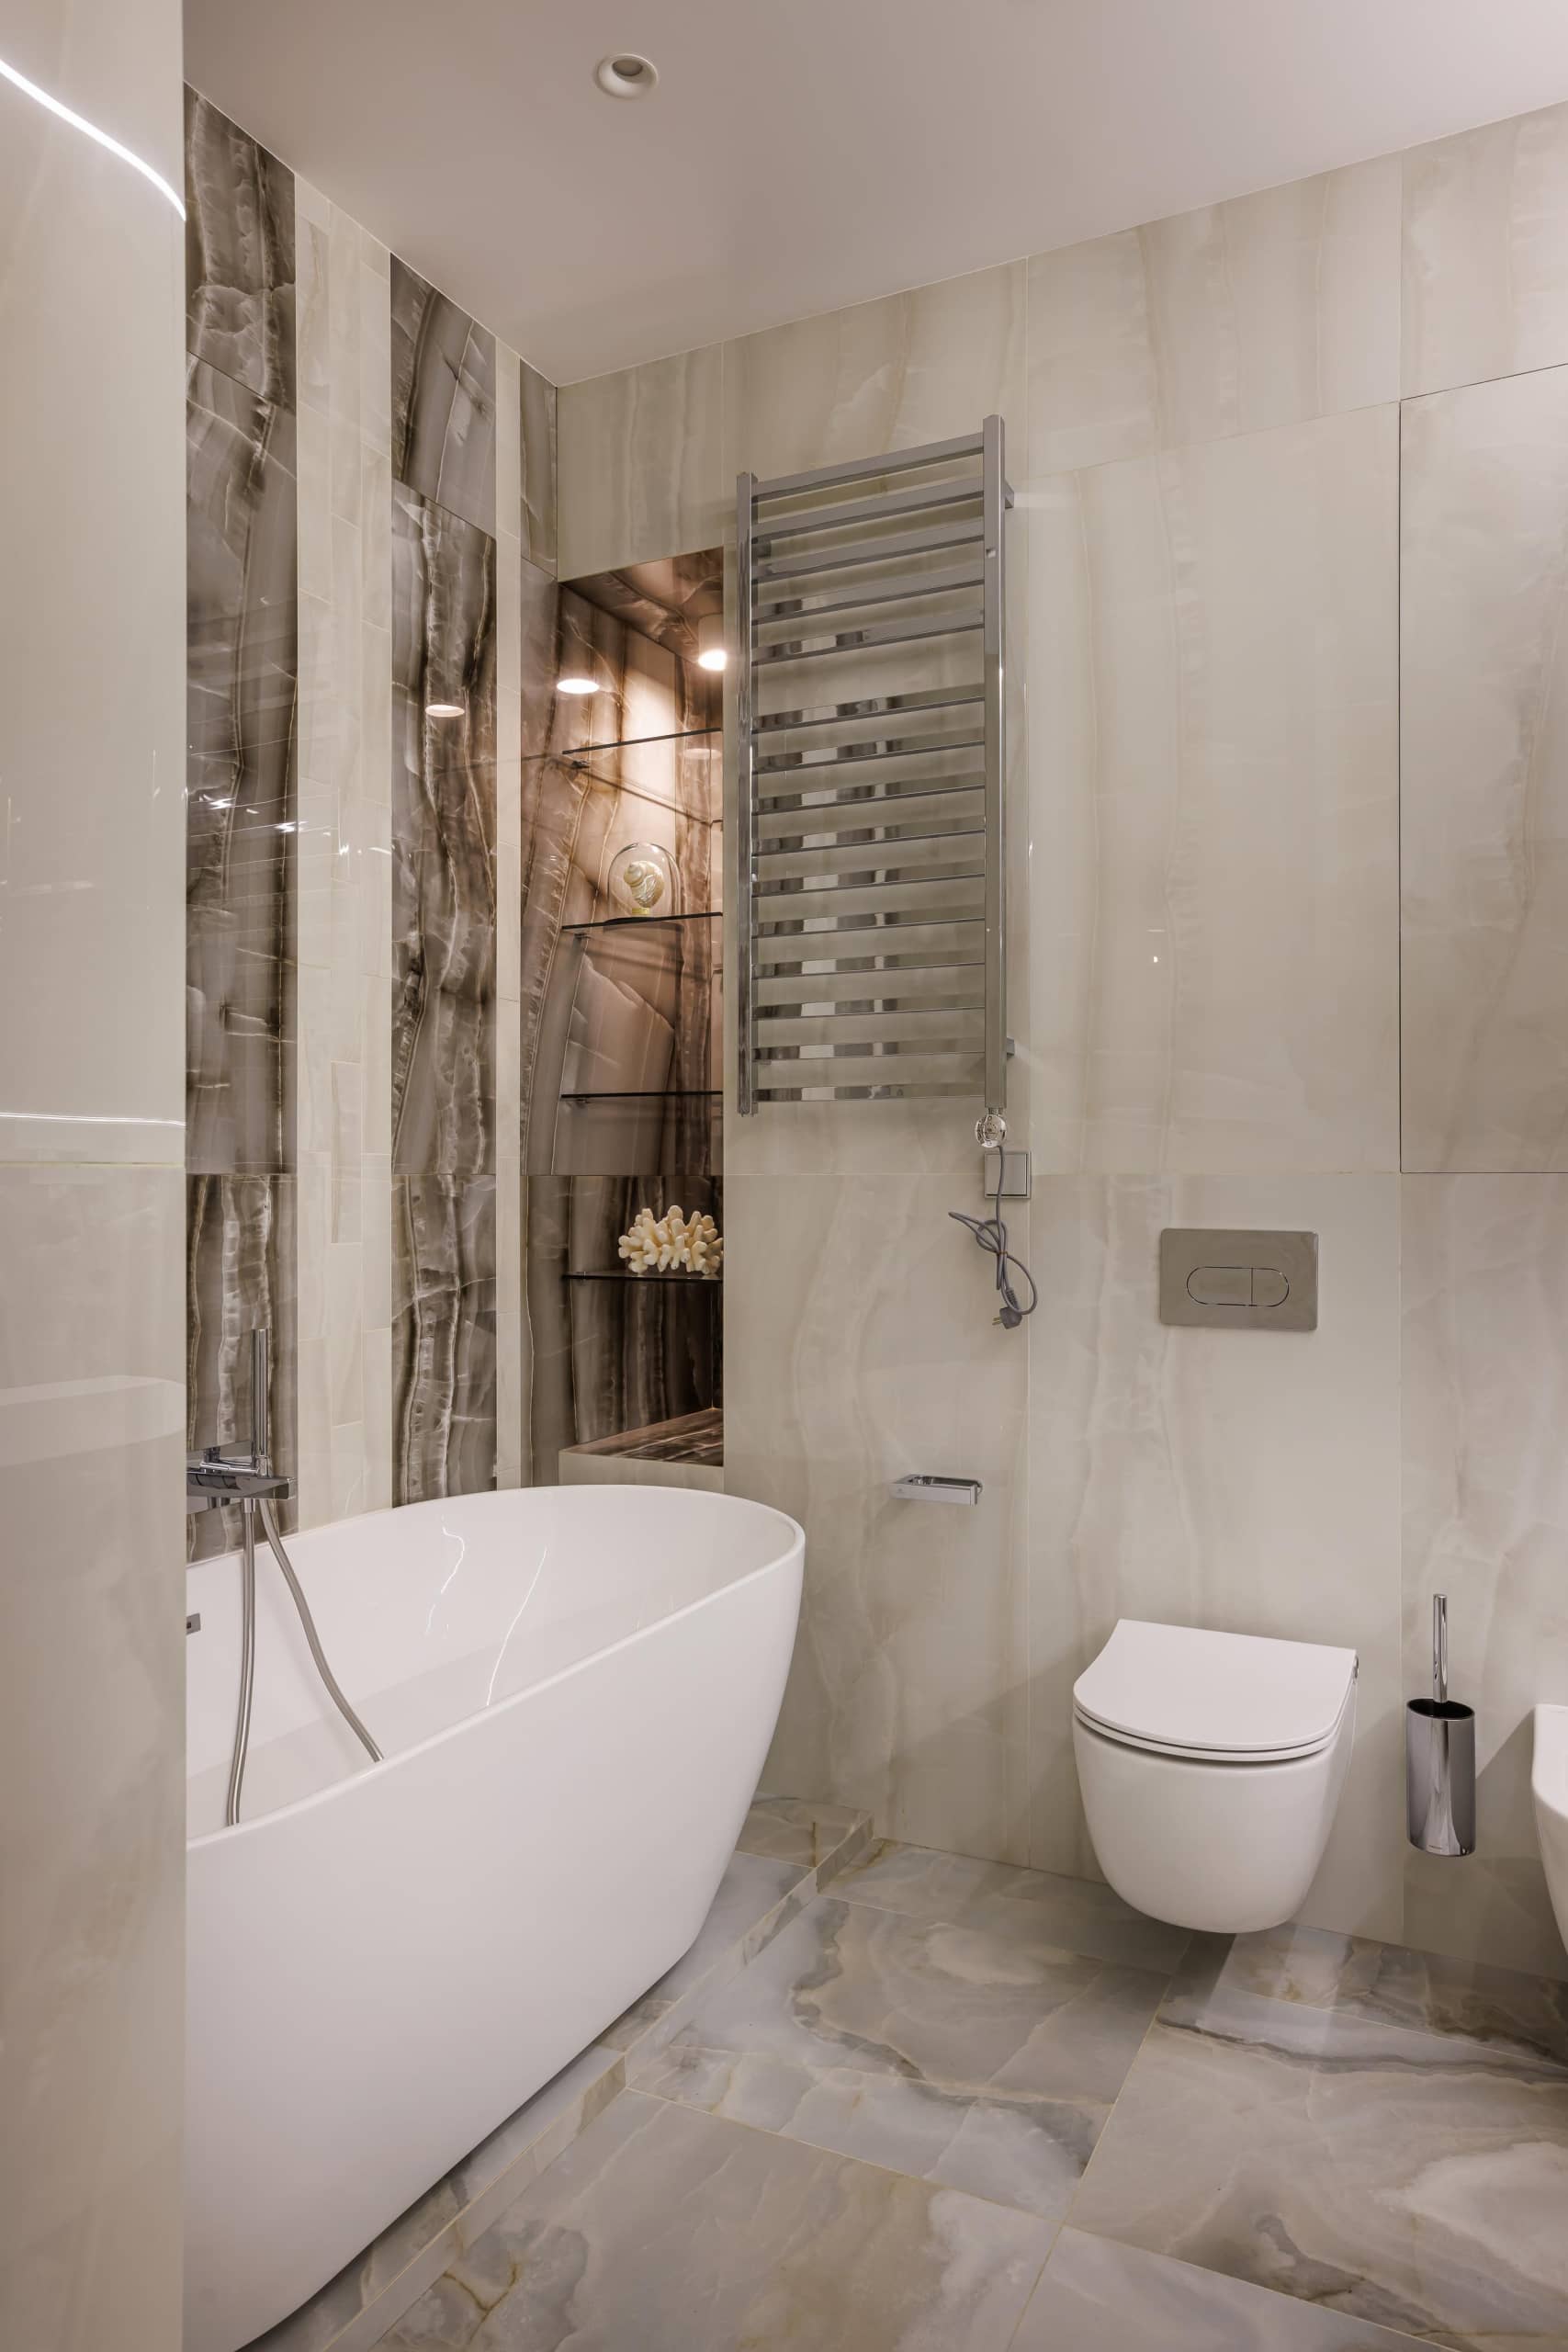 Оформление интерьера ванной комнаты в белый цвет. Фото № 71658.